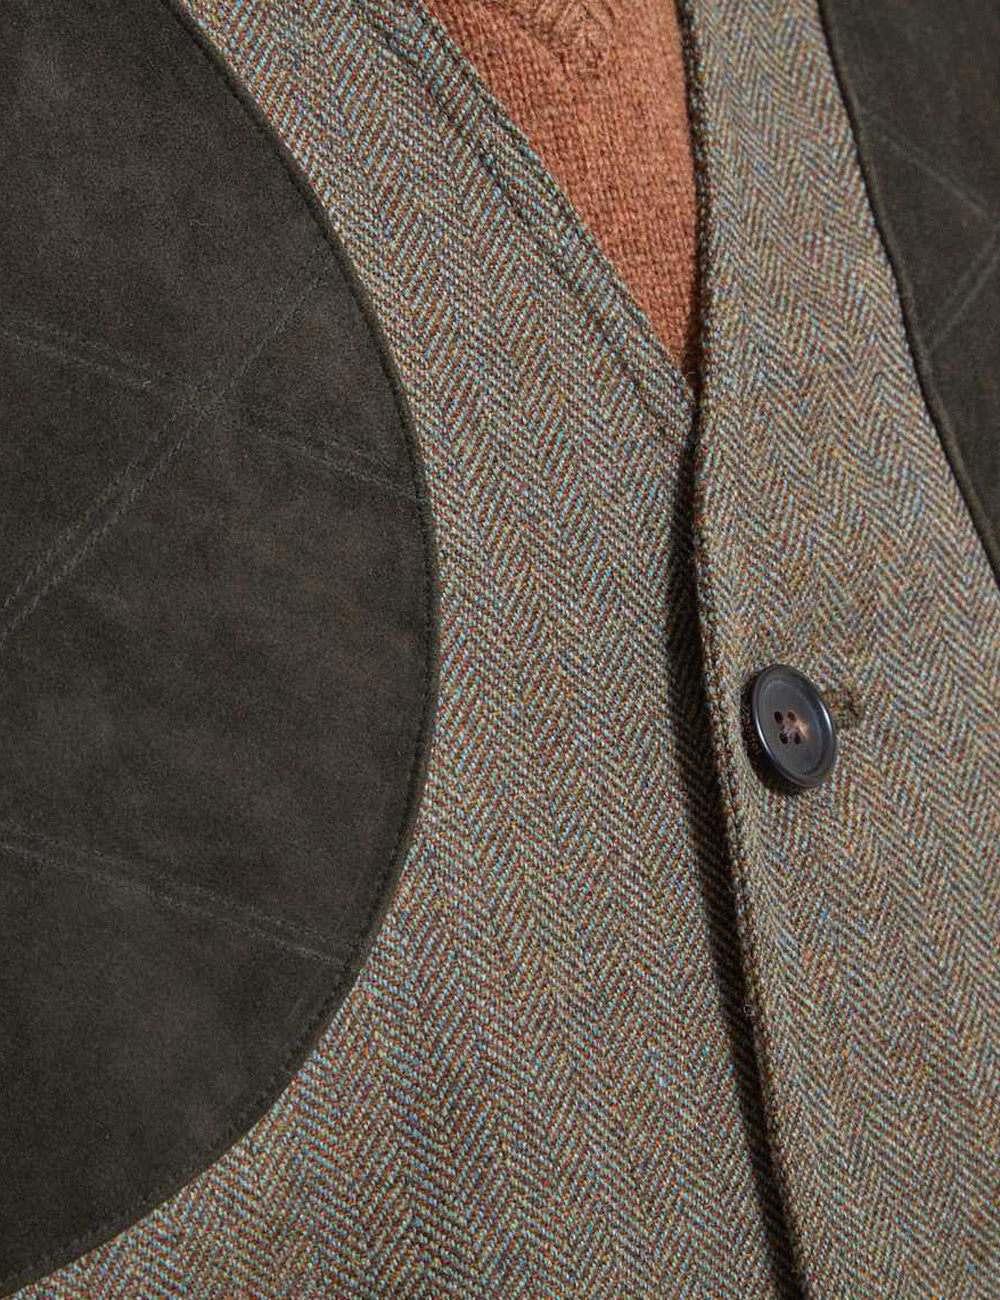 Schoffel Ptarmigan Tweed Waistcoat II - Loden Green Herringbone Tweed